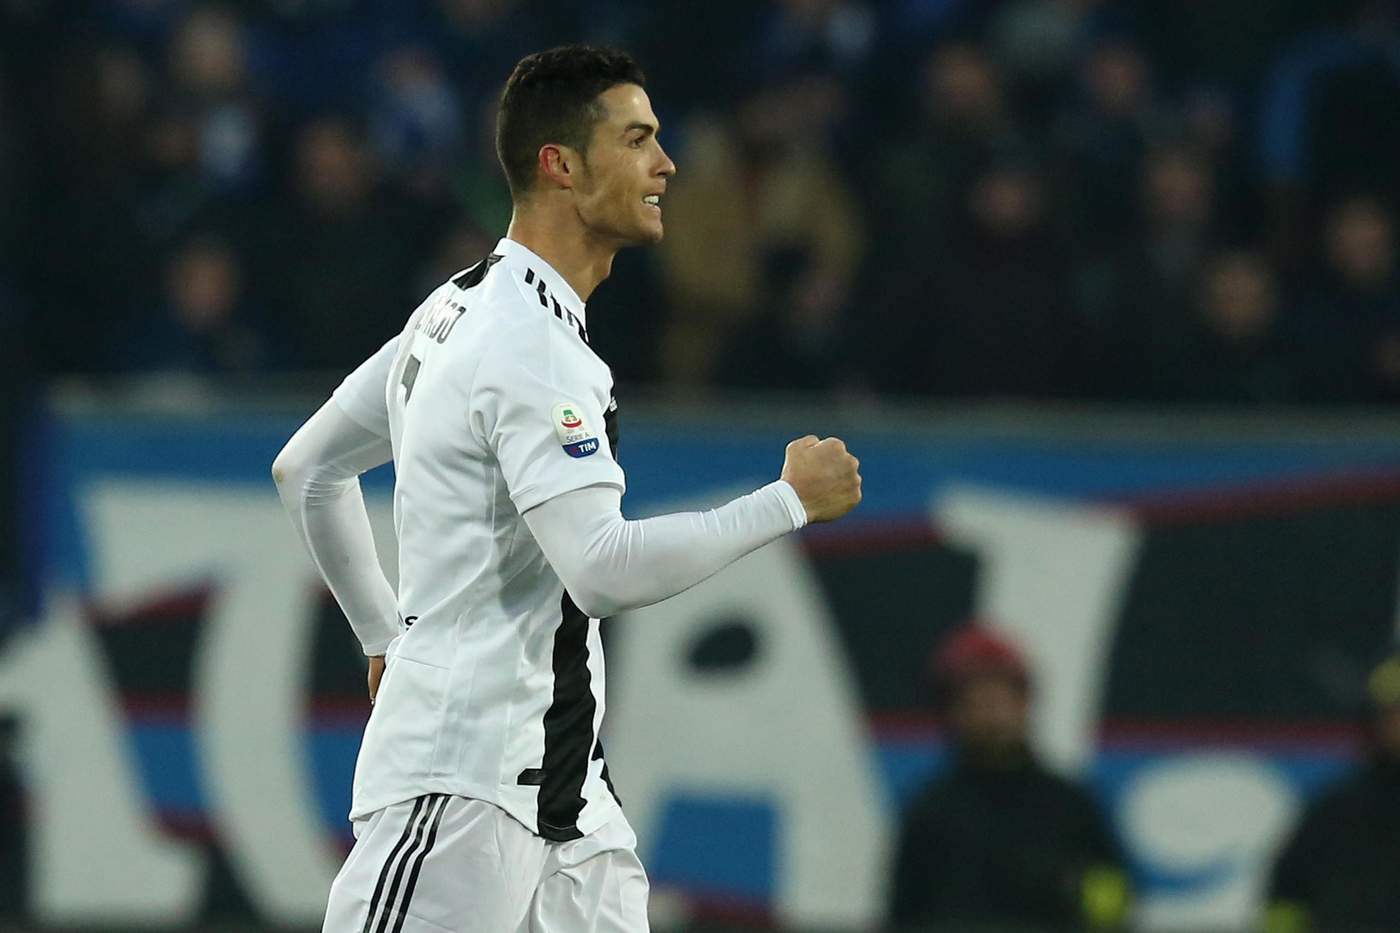 Cristiano Ronaldo remató de cabeza para marcar el tanto del empate a dos entre Juventus y Atalanta.